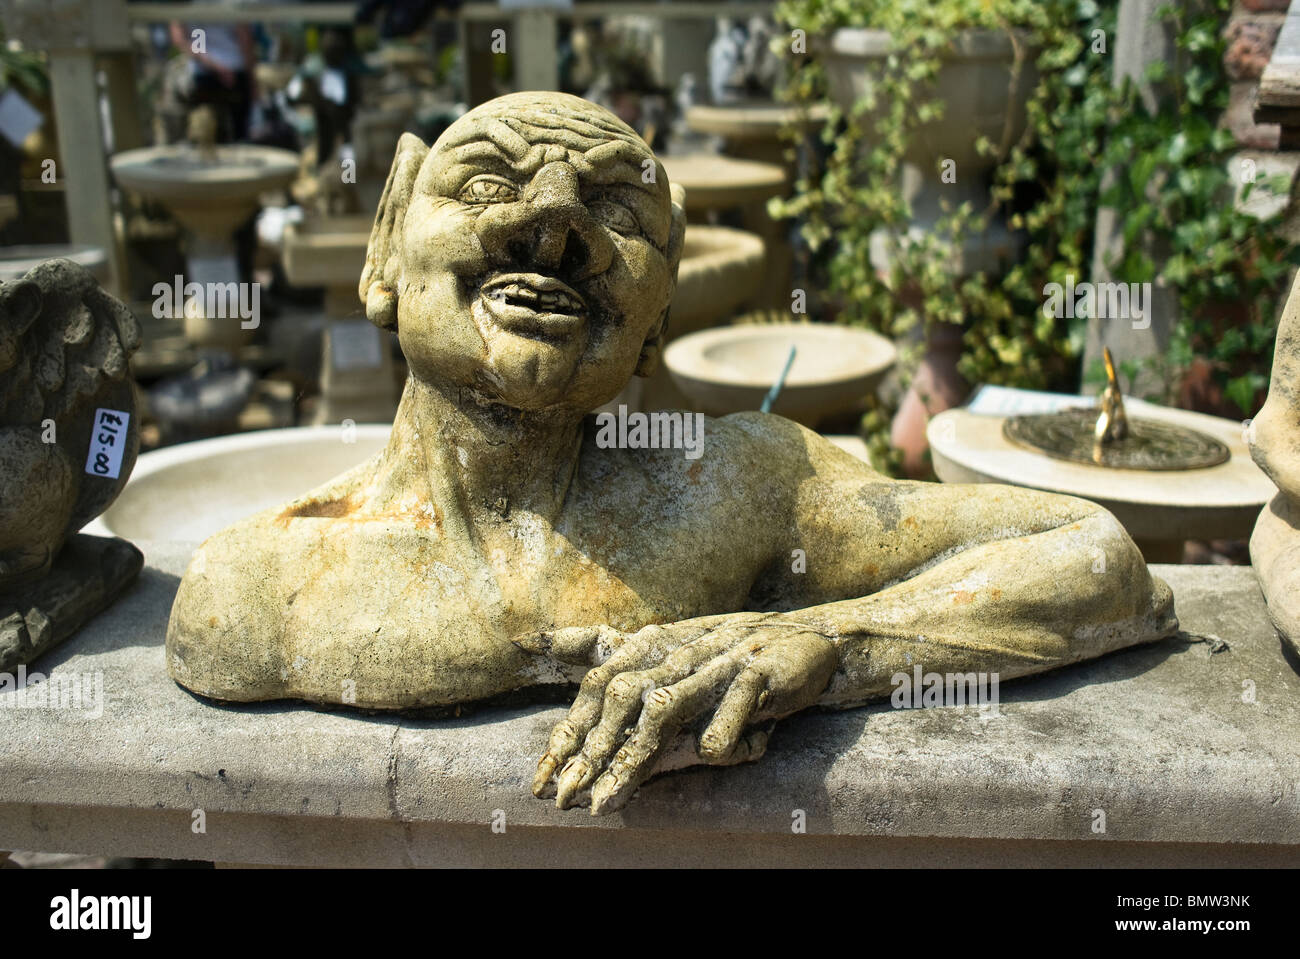 Grotesque garden ornamental bust for sale Stock Photo